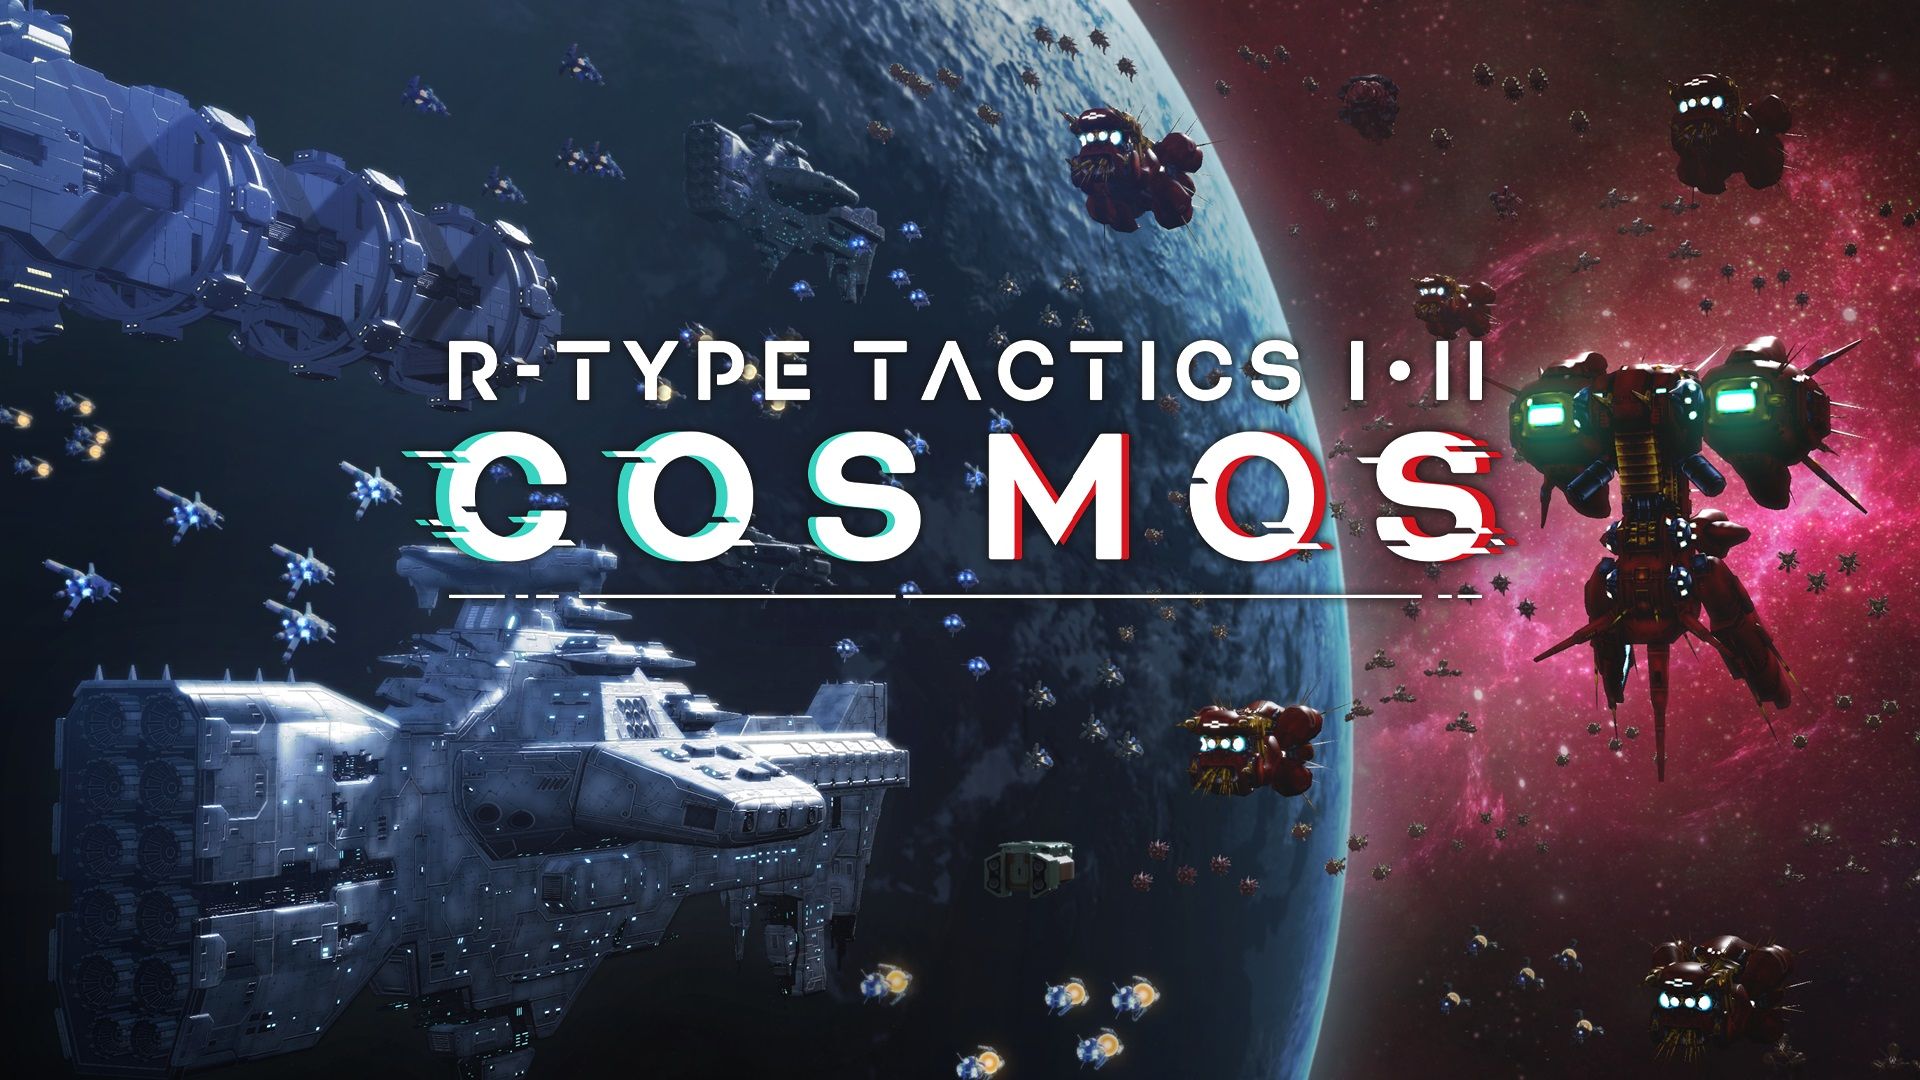 R-Type Tactics I • II Cosmos è stato rimandato al 2024 